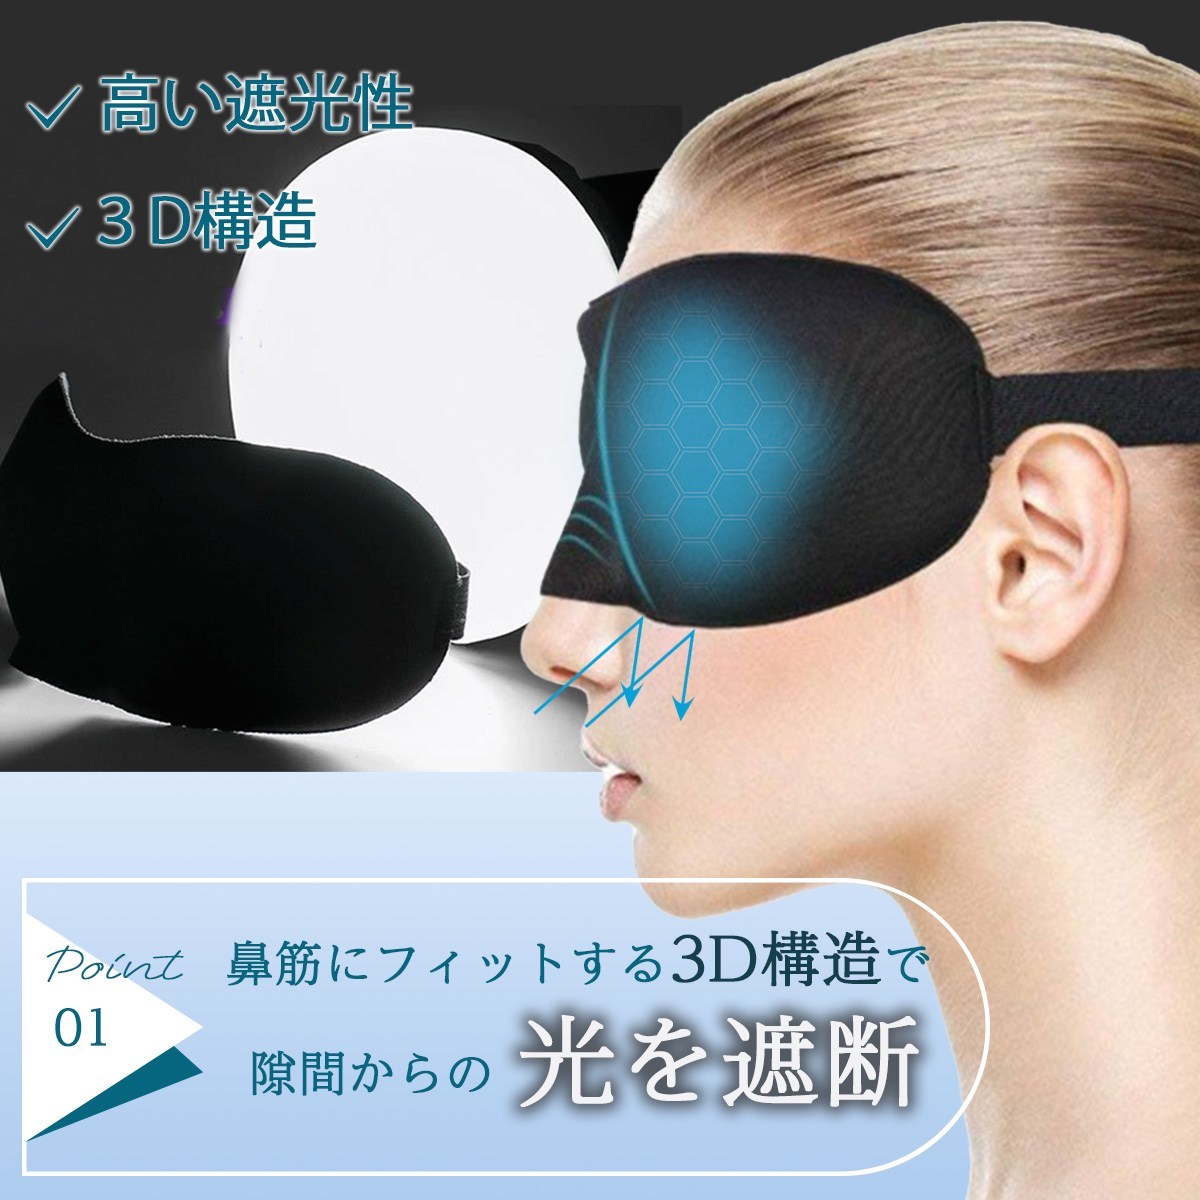 【ブルー】アイマスク 睡眠 3D 遮光 快眠 立体型 シルク質感 男女兼用_画像3